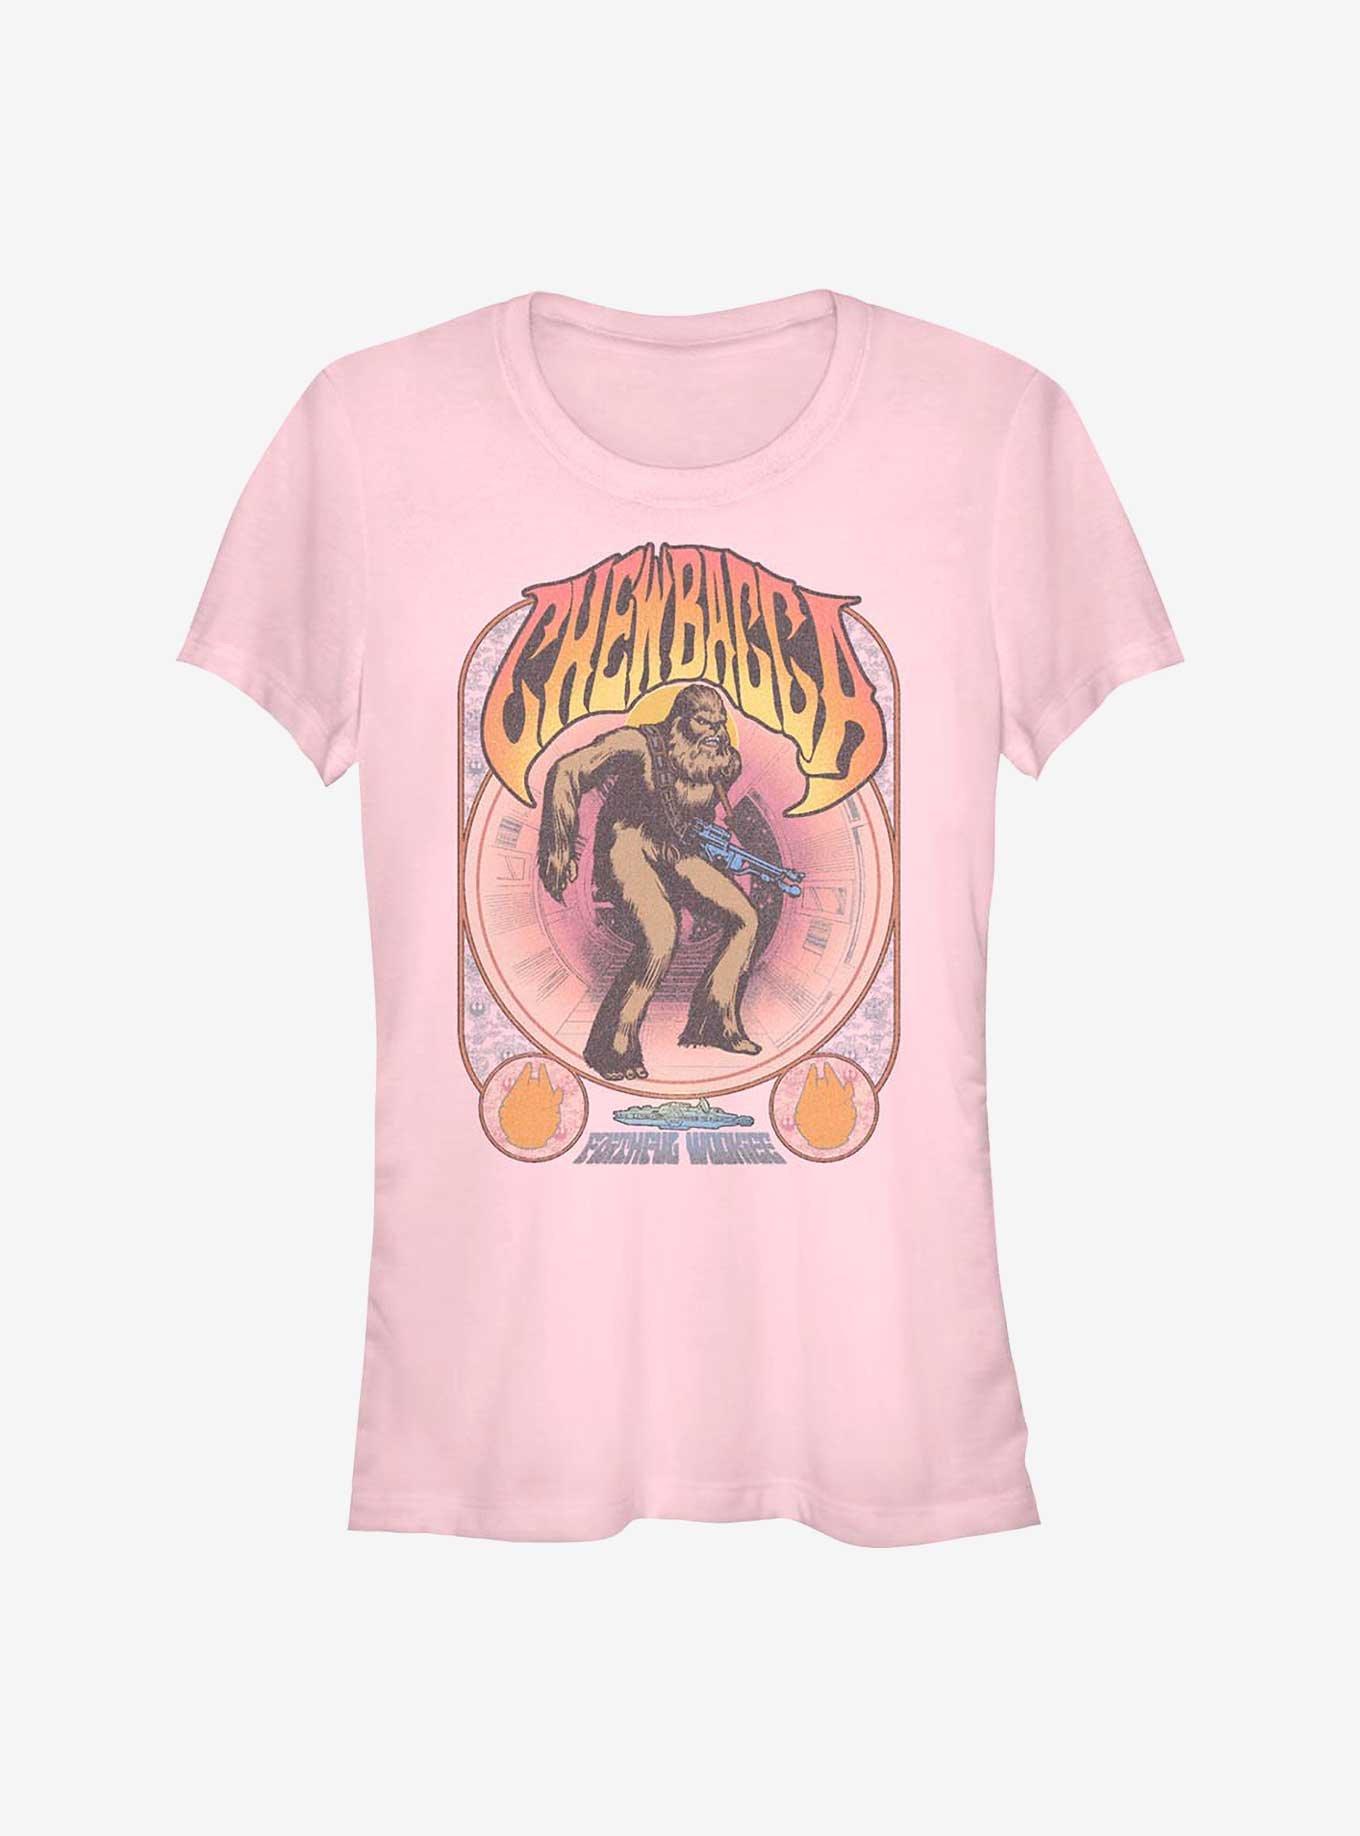 Star Wars Chewbacca Girls T-Shirt